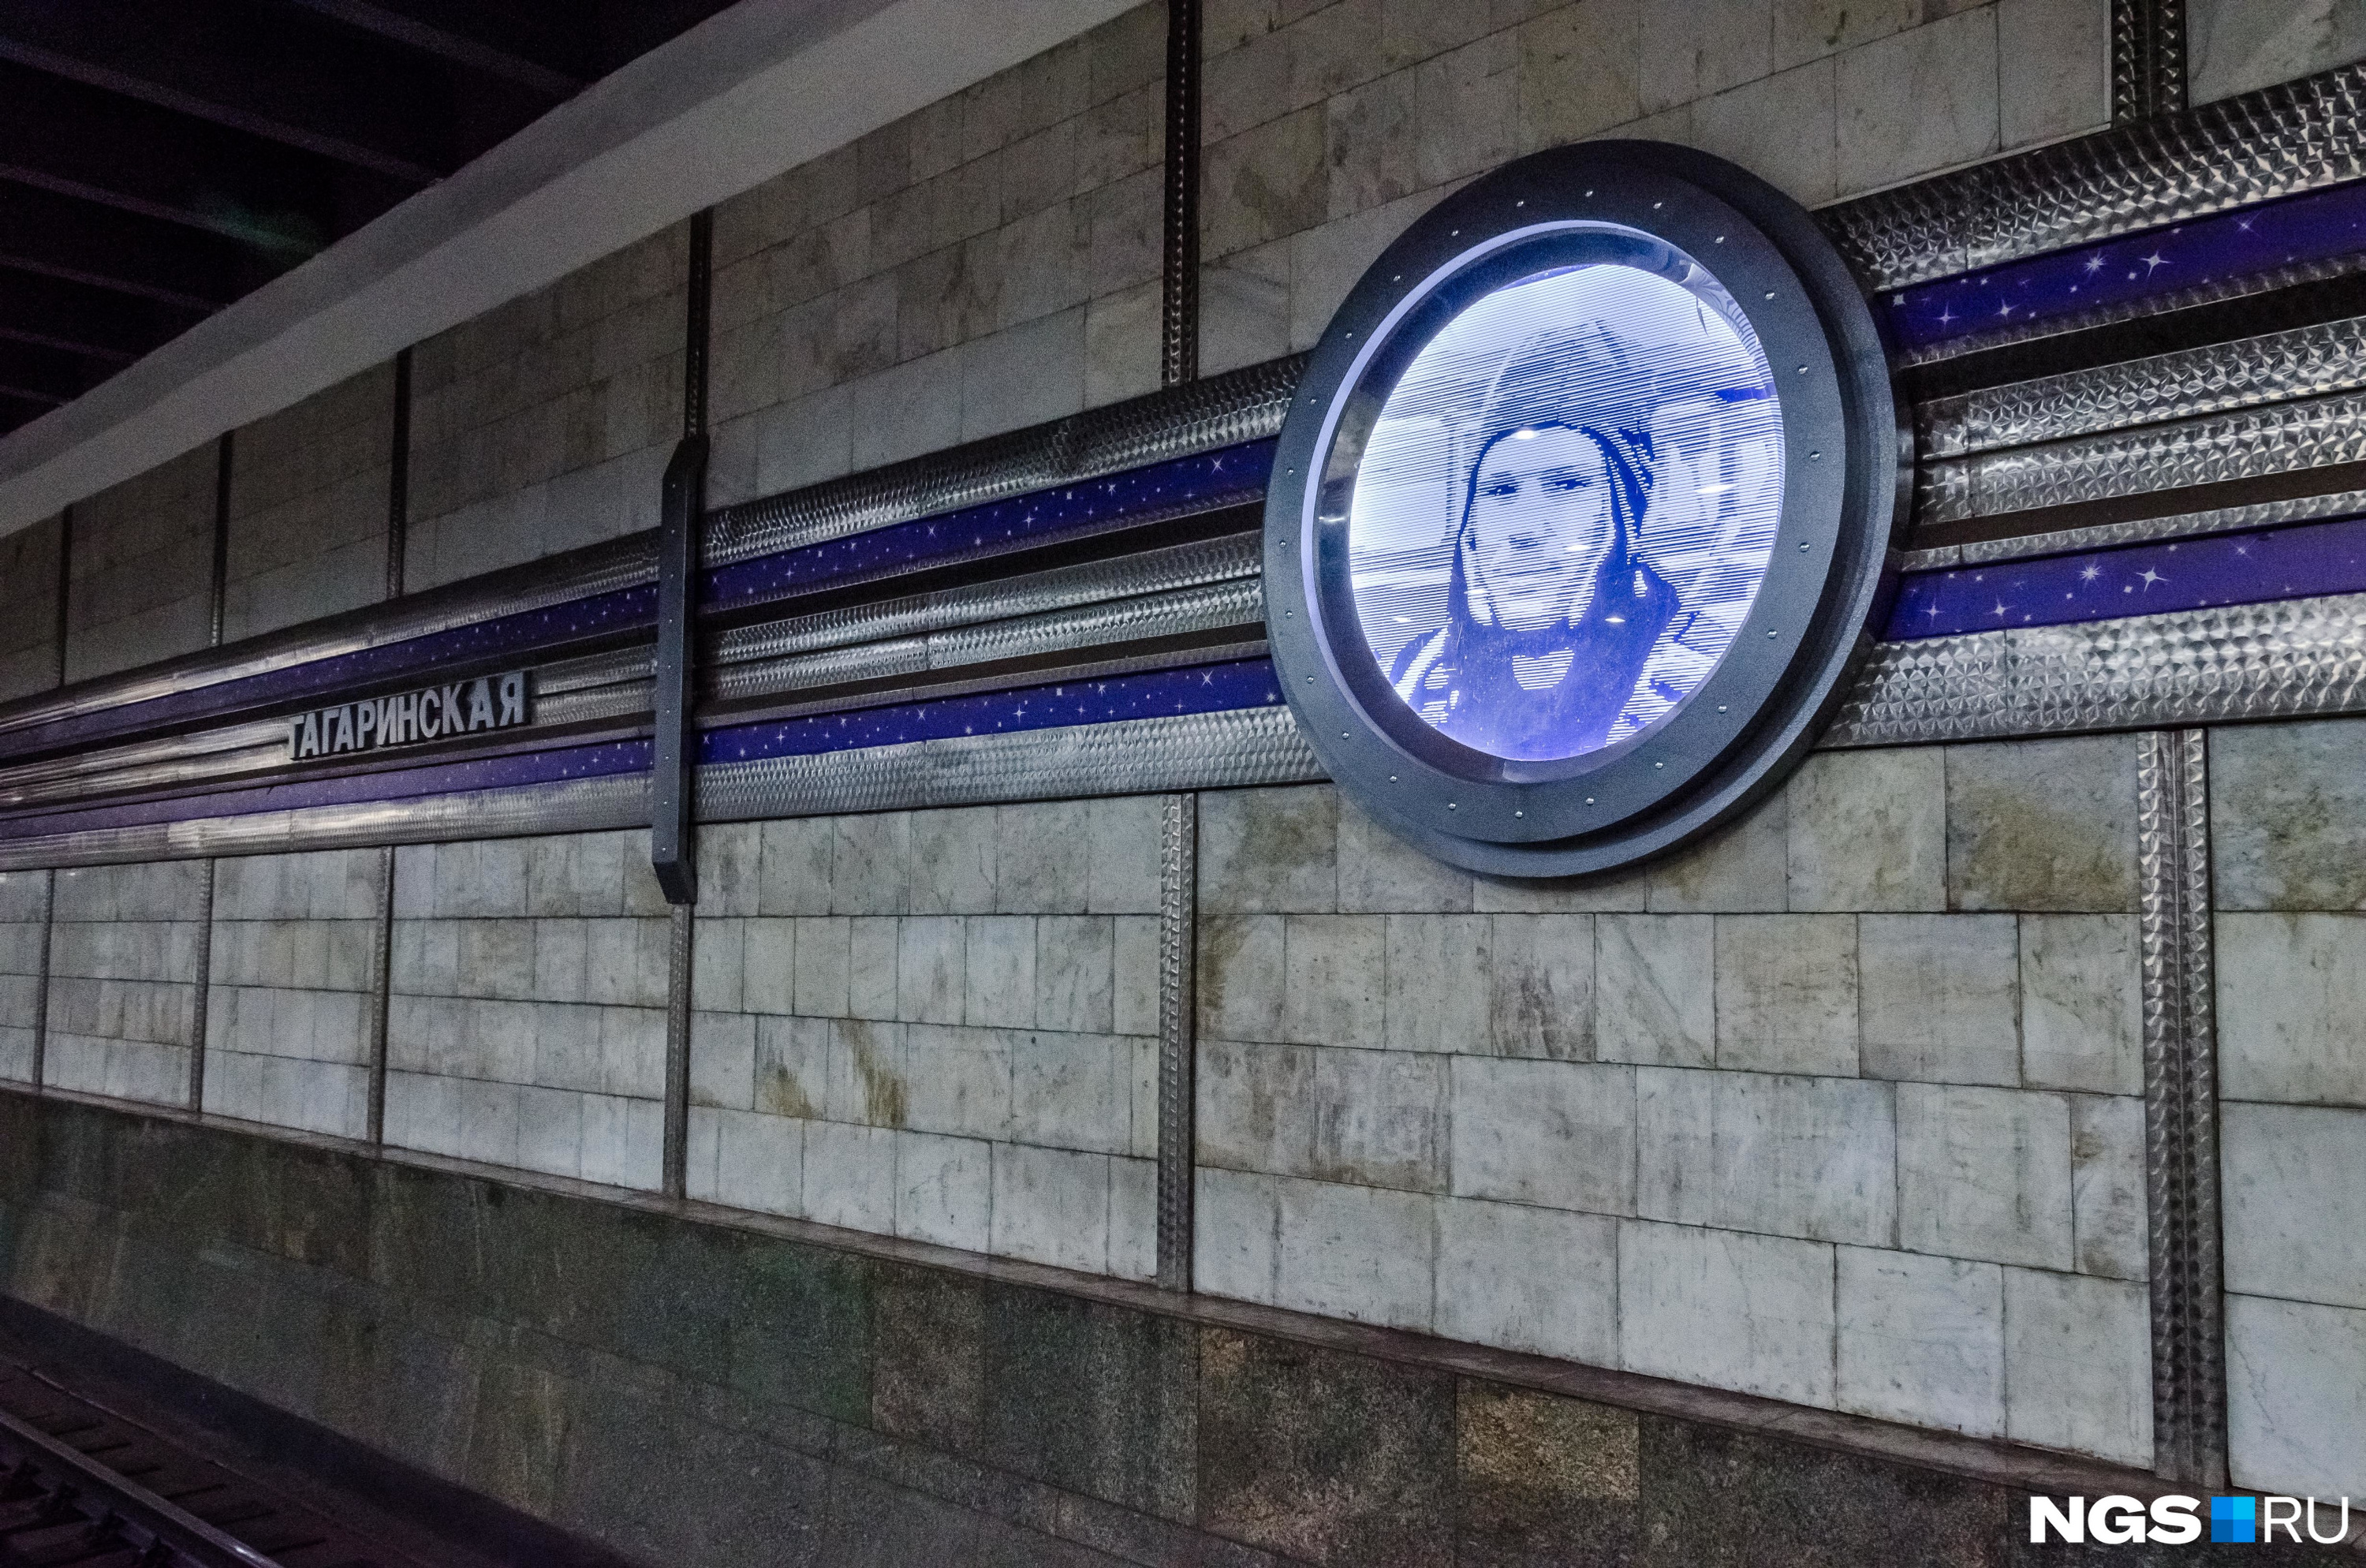 В честь <nobr class="_">50-летия</nobr> полета Юрия Гагарина в апреле 2011 года новосибирский метрополитен оформил станции портретами космонавта